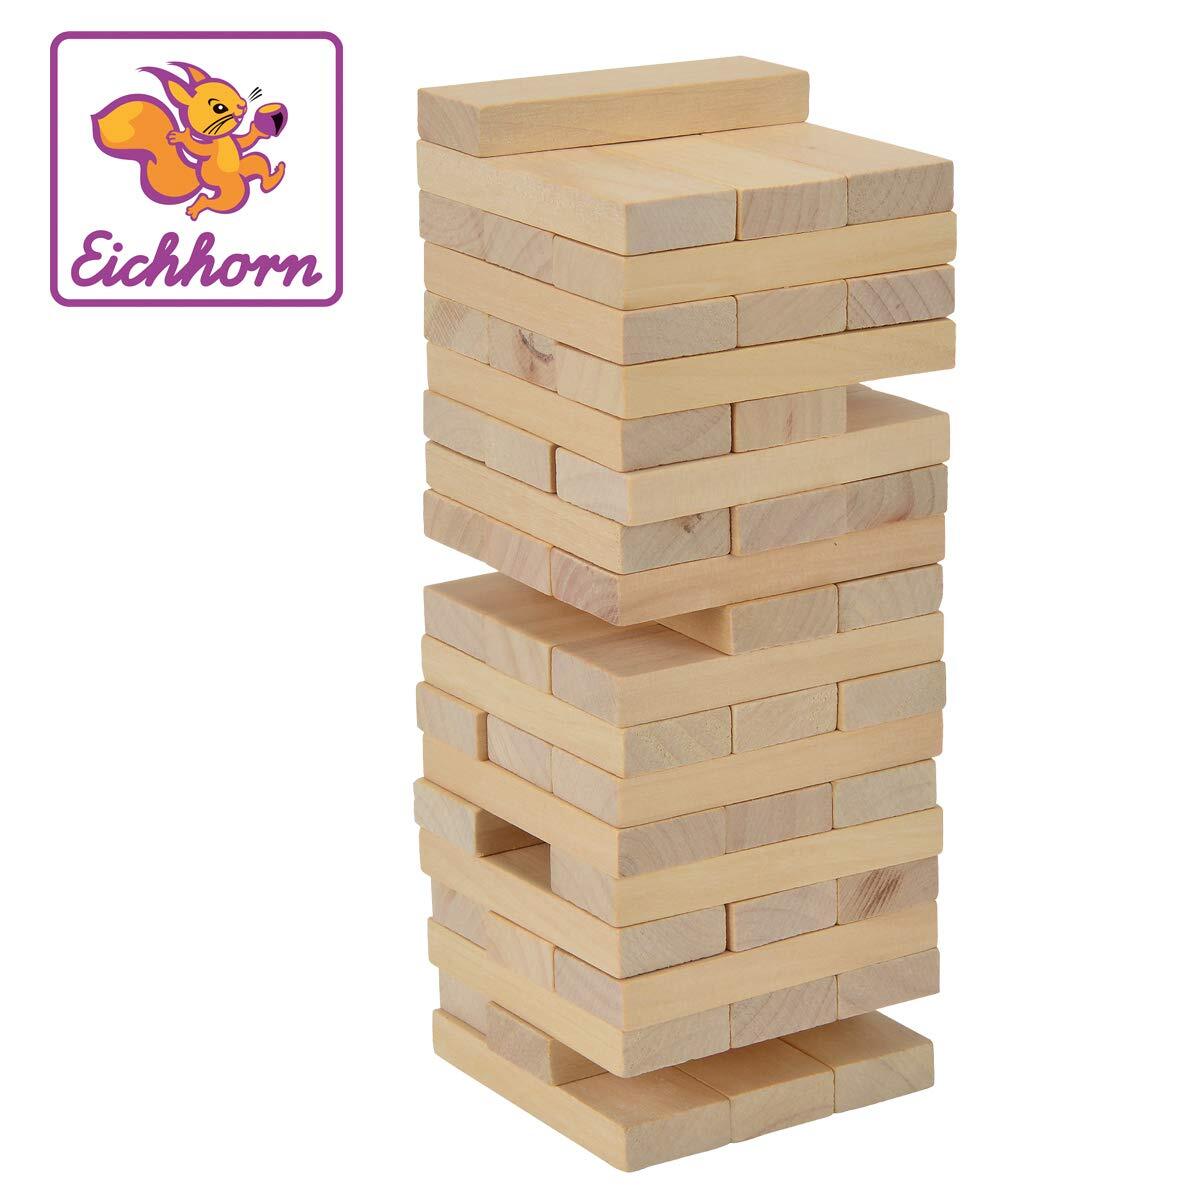 eichhorn Eichhoorn stapelspel, behendigheidsspel voor het hele gezin, Balance Tower gemaakt van onbehandeld hout, 54 delig, geschikt vanaf 5 jaar